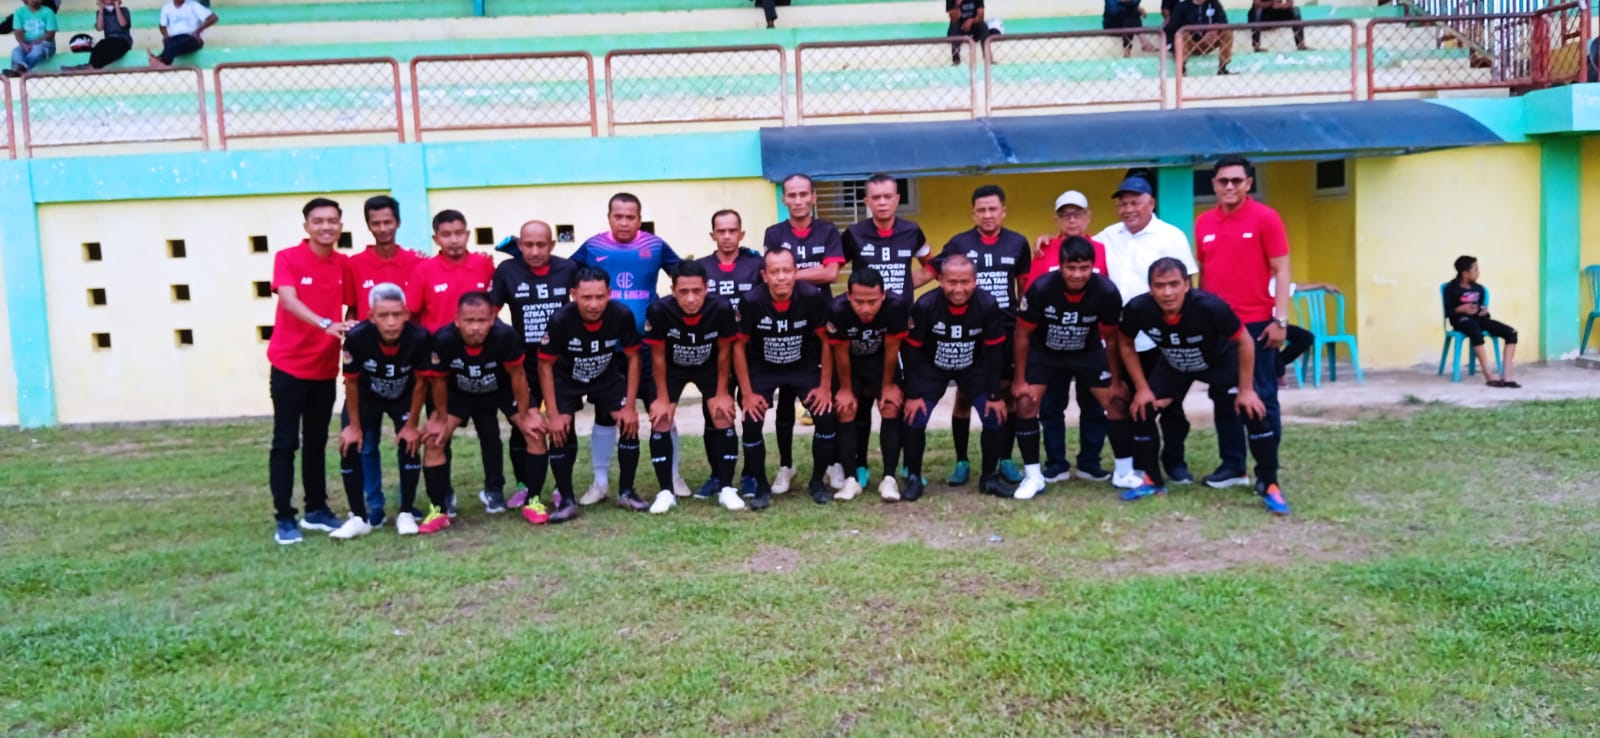 Tim Kecamatan Sungayang foto bersama jelang pertandingan melawan Kecamatan Lima Kaum